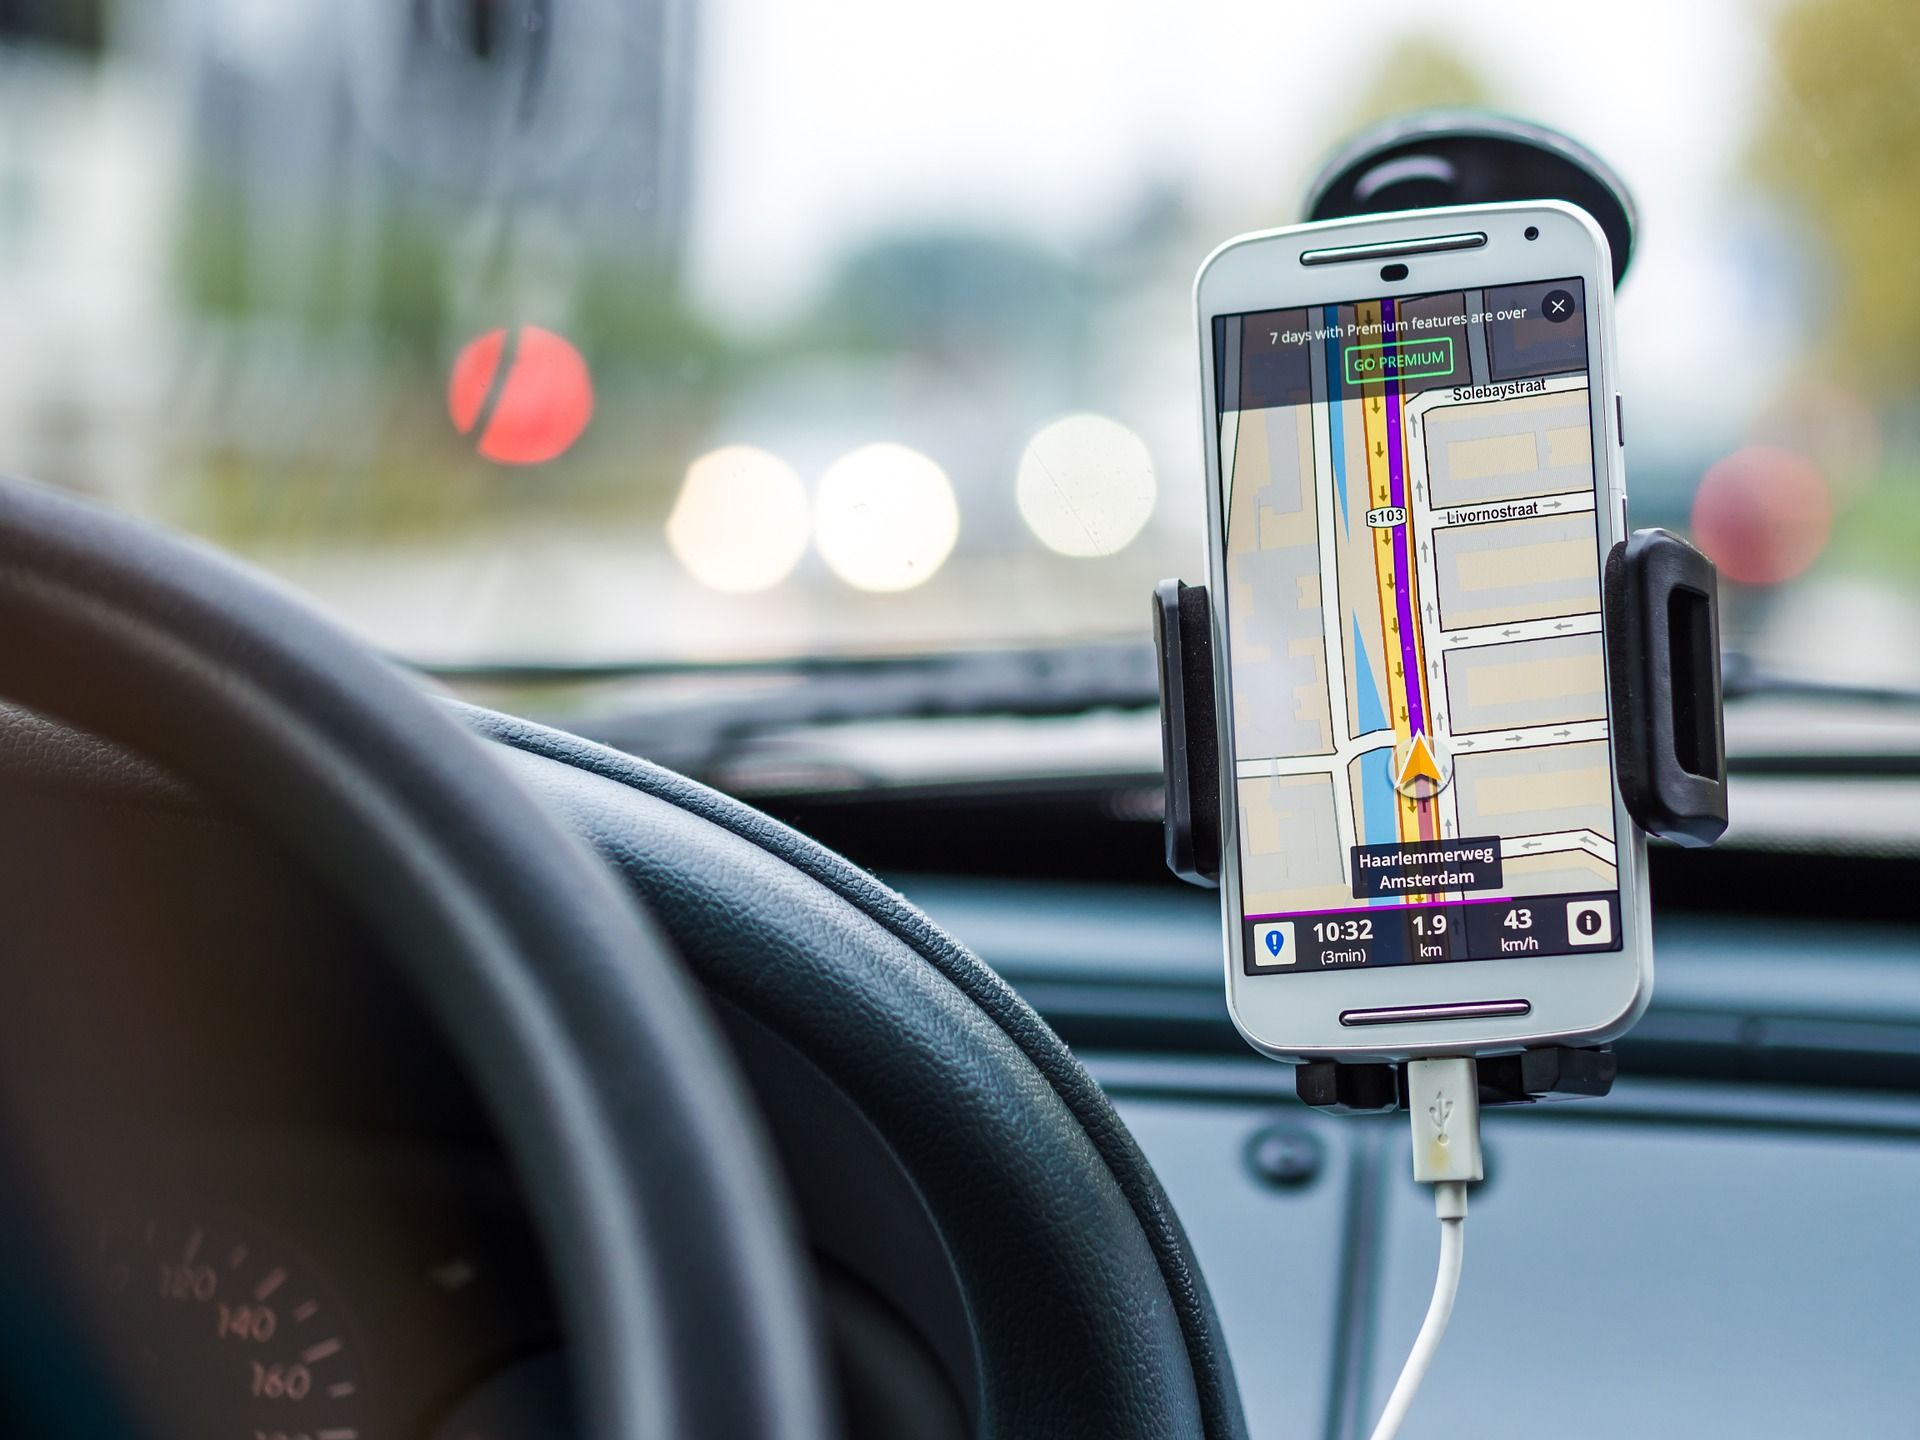 ไม่ต้องกลัวขับรถเลยซอยอีกต่อไป เพราะชิป GPS บนมือถือในปี 2018 จะมีความคลาดเคลื่อนน้อยในระดับ 30 เซนติเมตร